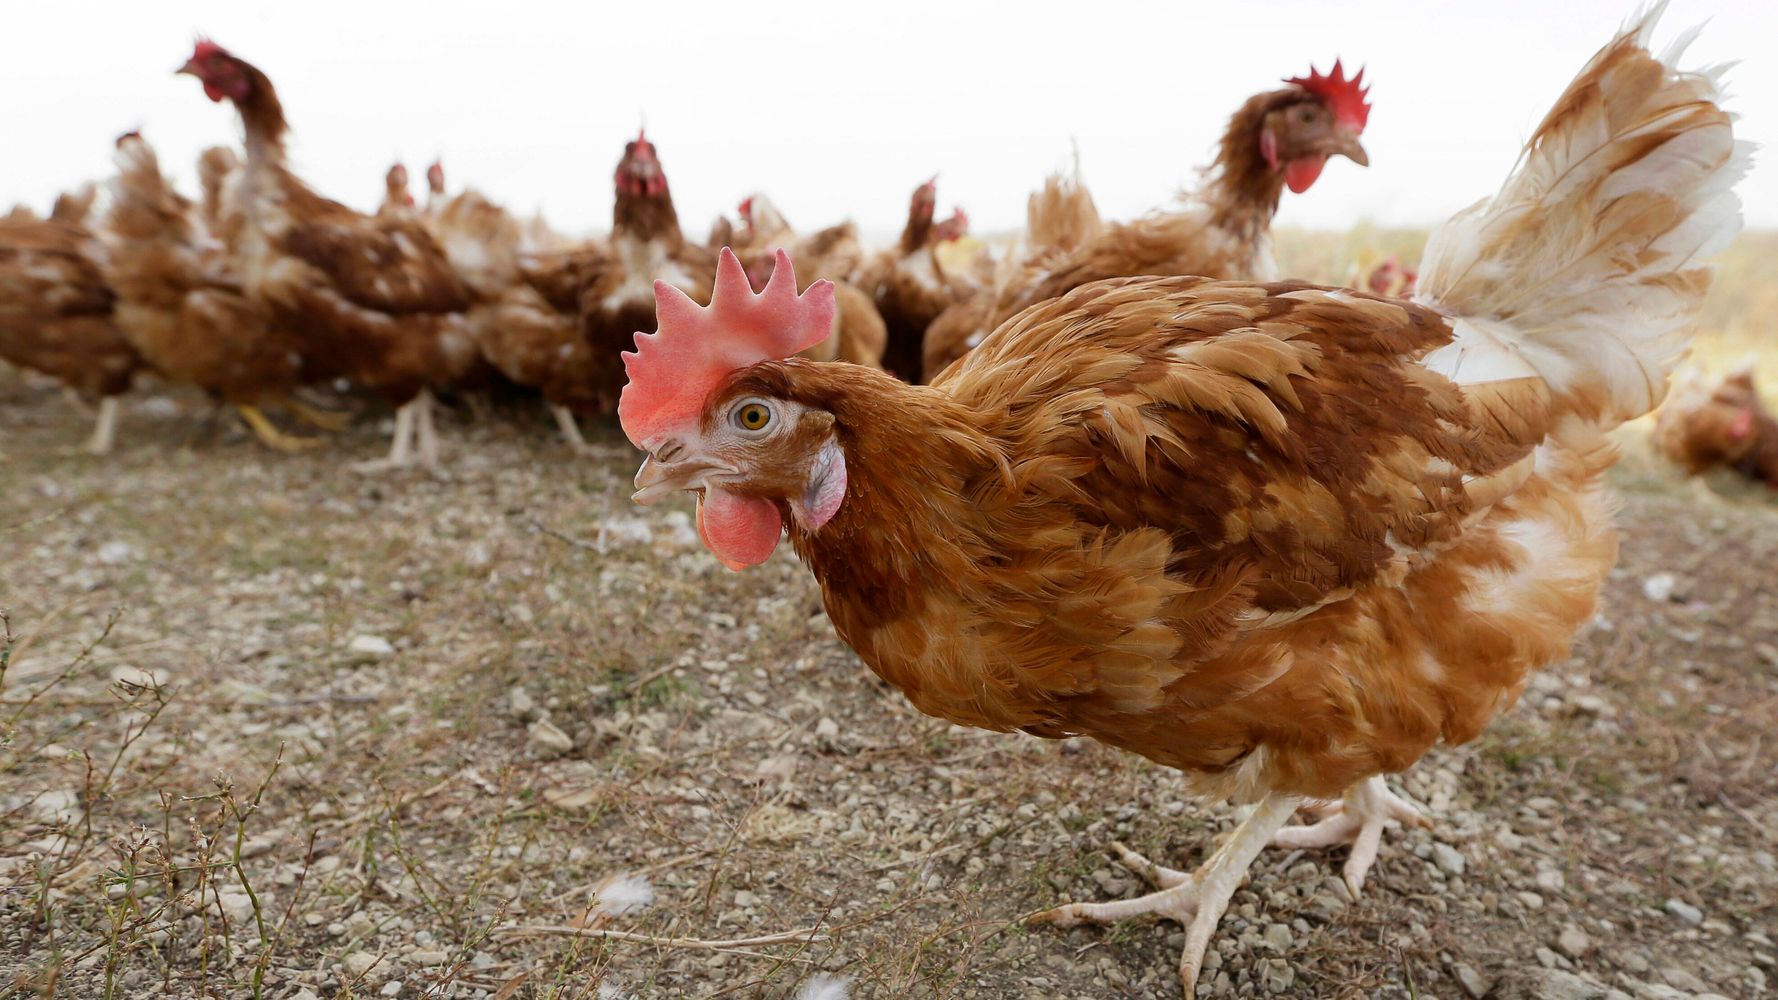 アイオワ州で鳥インフルエンザの発生により530万羽の鶏が死亡